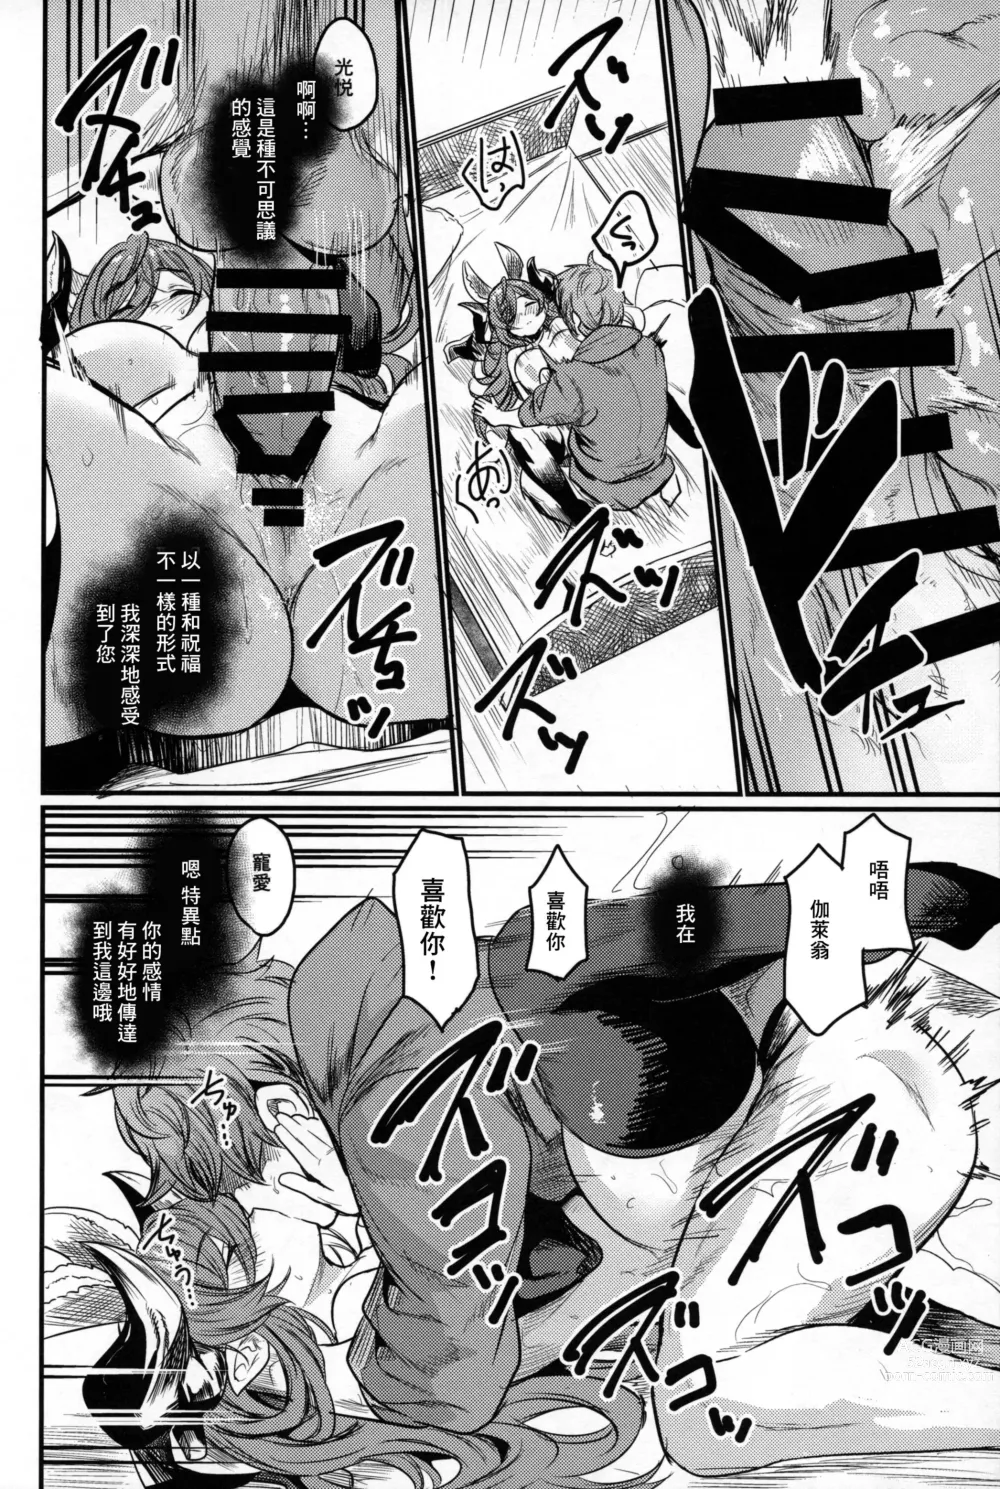 Page 6 of doujinshi Doukin.